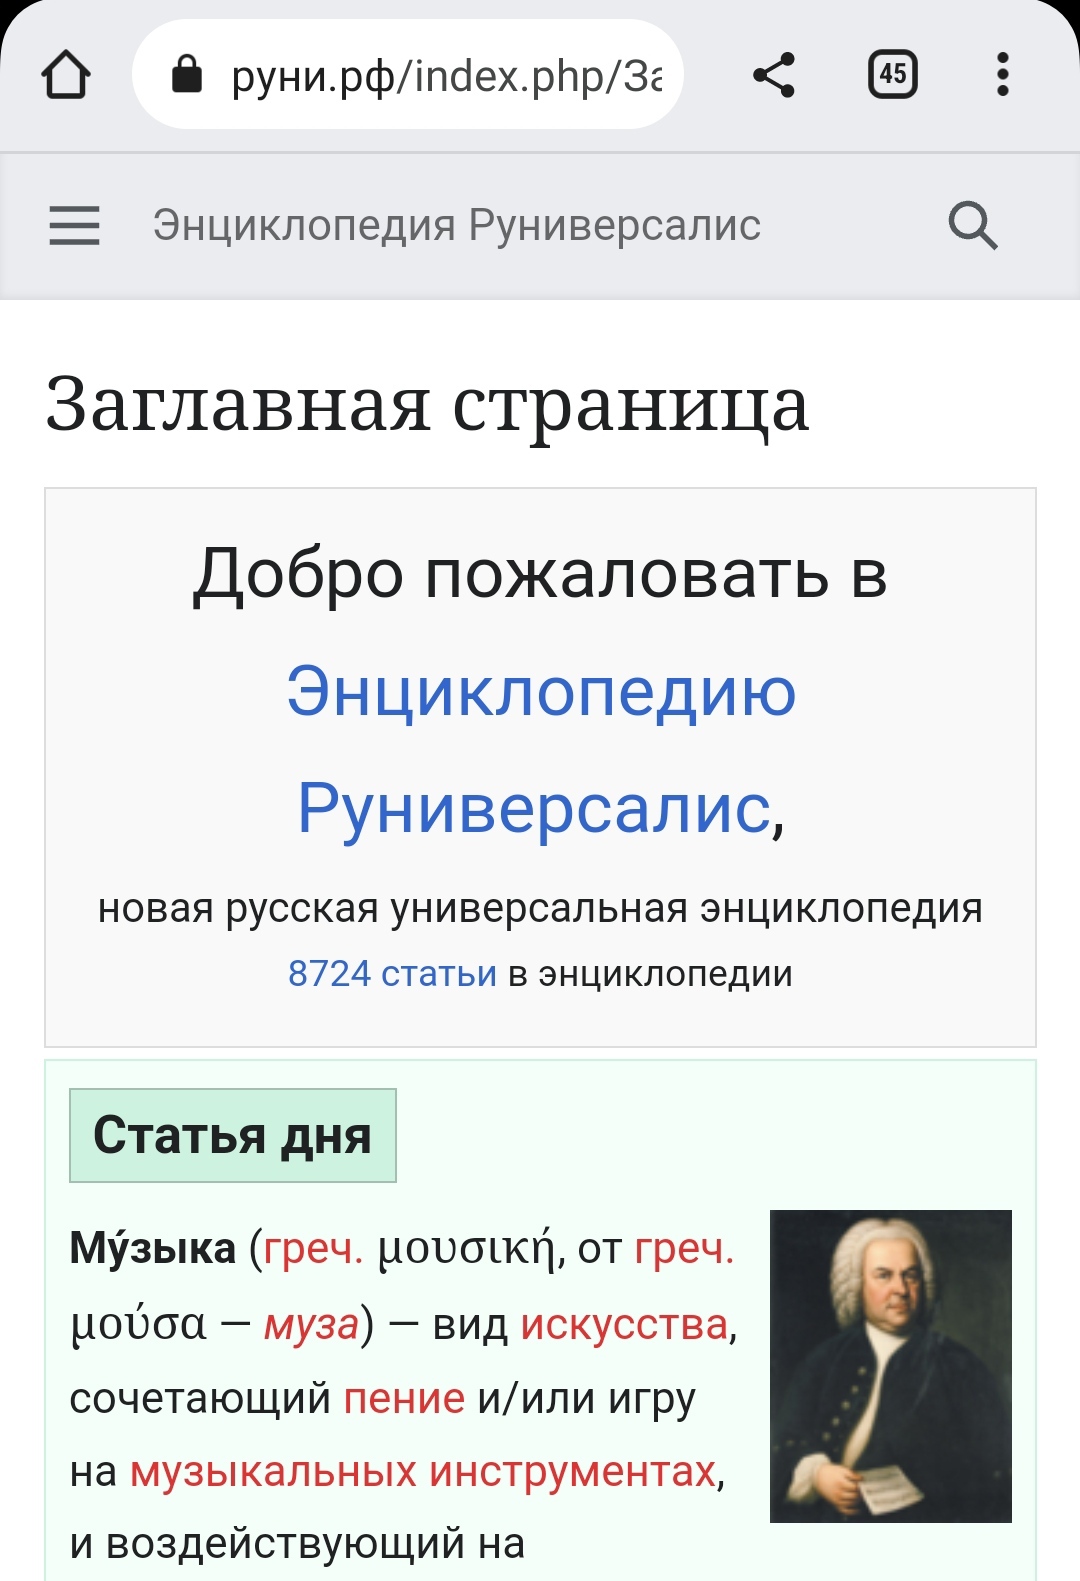 Аналог Википедии в России.